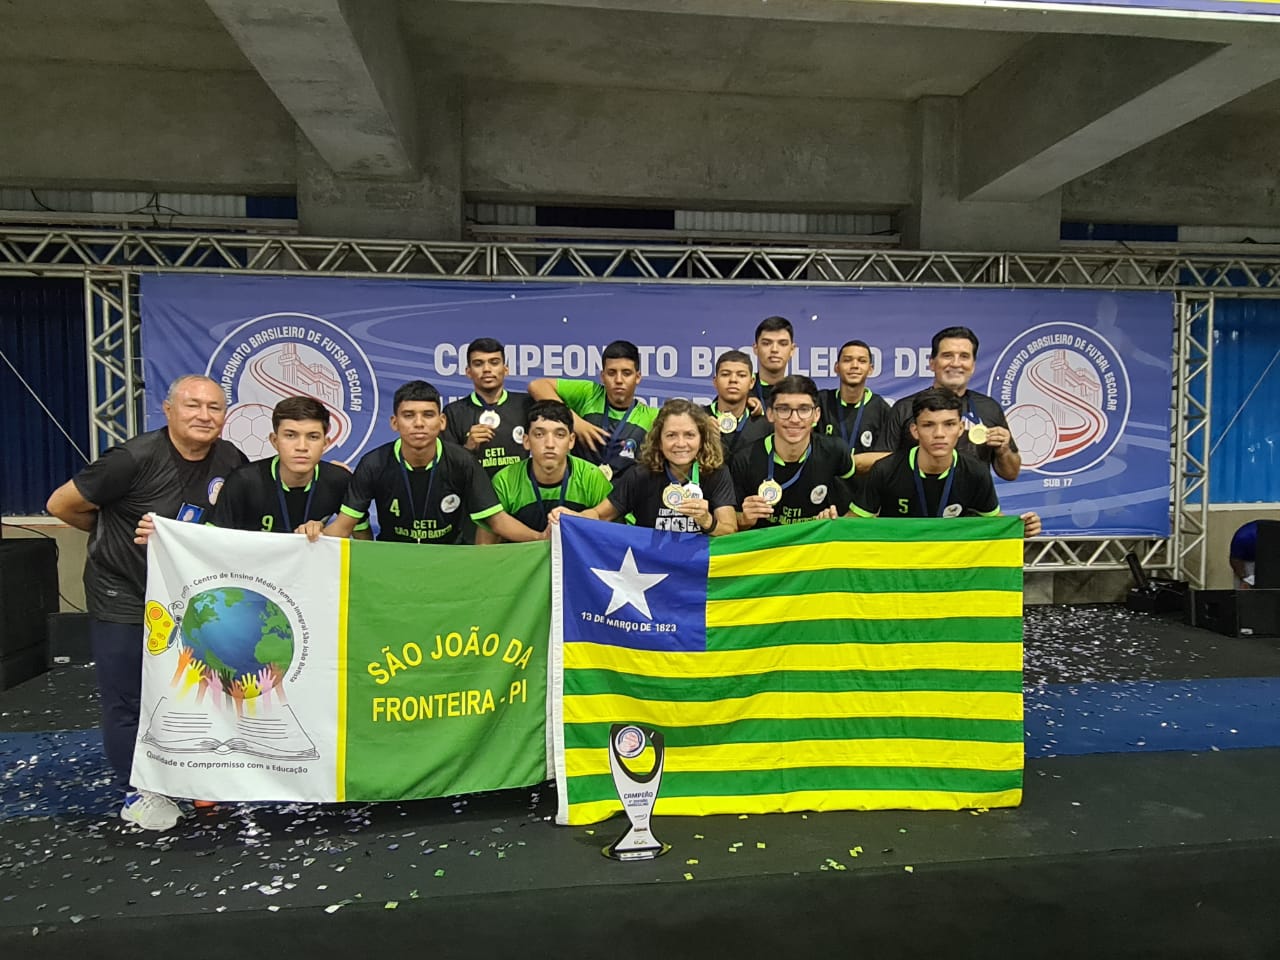 Campeonato Nacional Sub-17 I Divisão- Notícias, agenda, fotos e